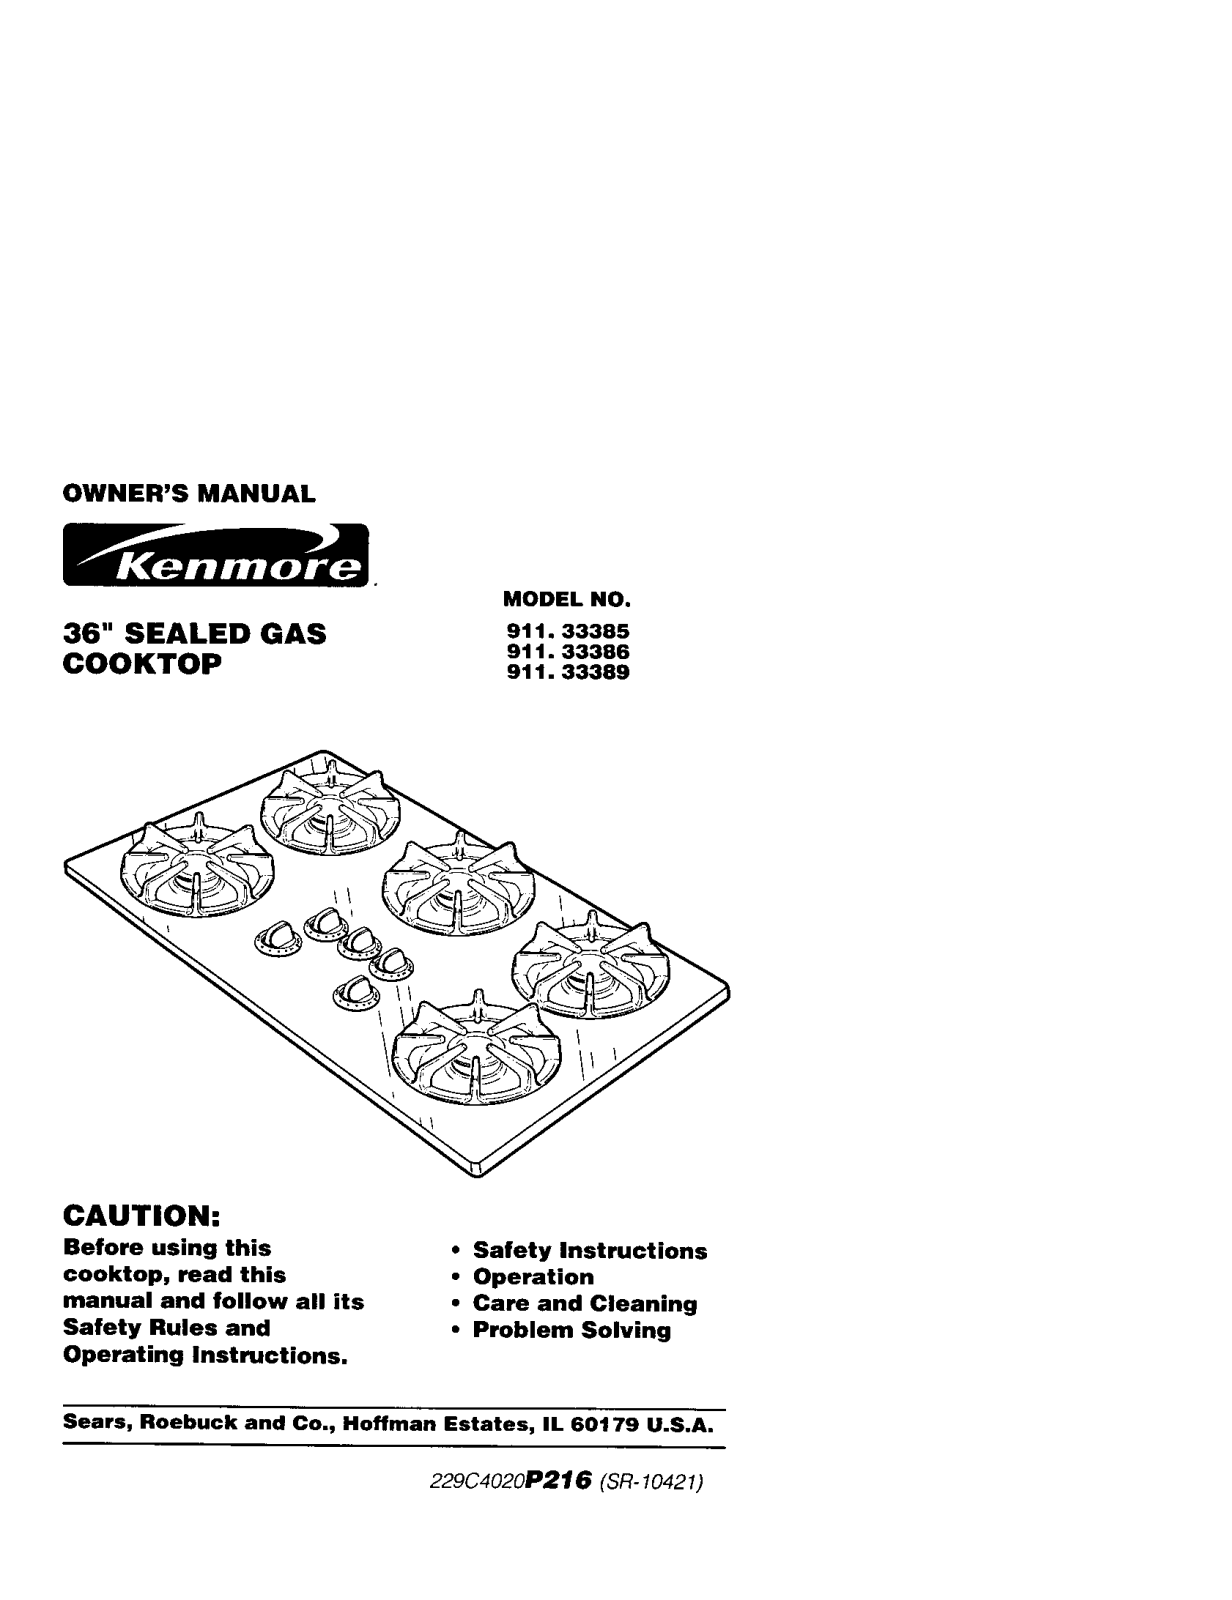 Kenmore 91133384101, 91133385100, 91133389100 Owner’s Manual